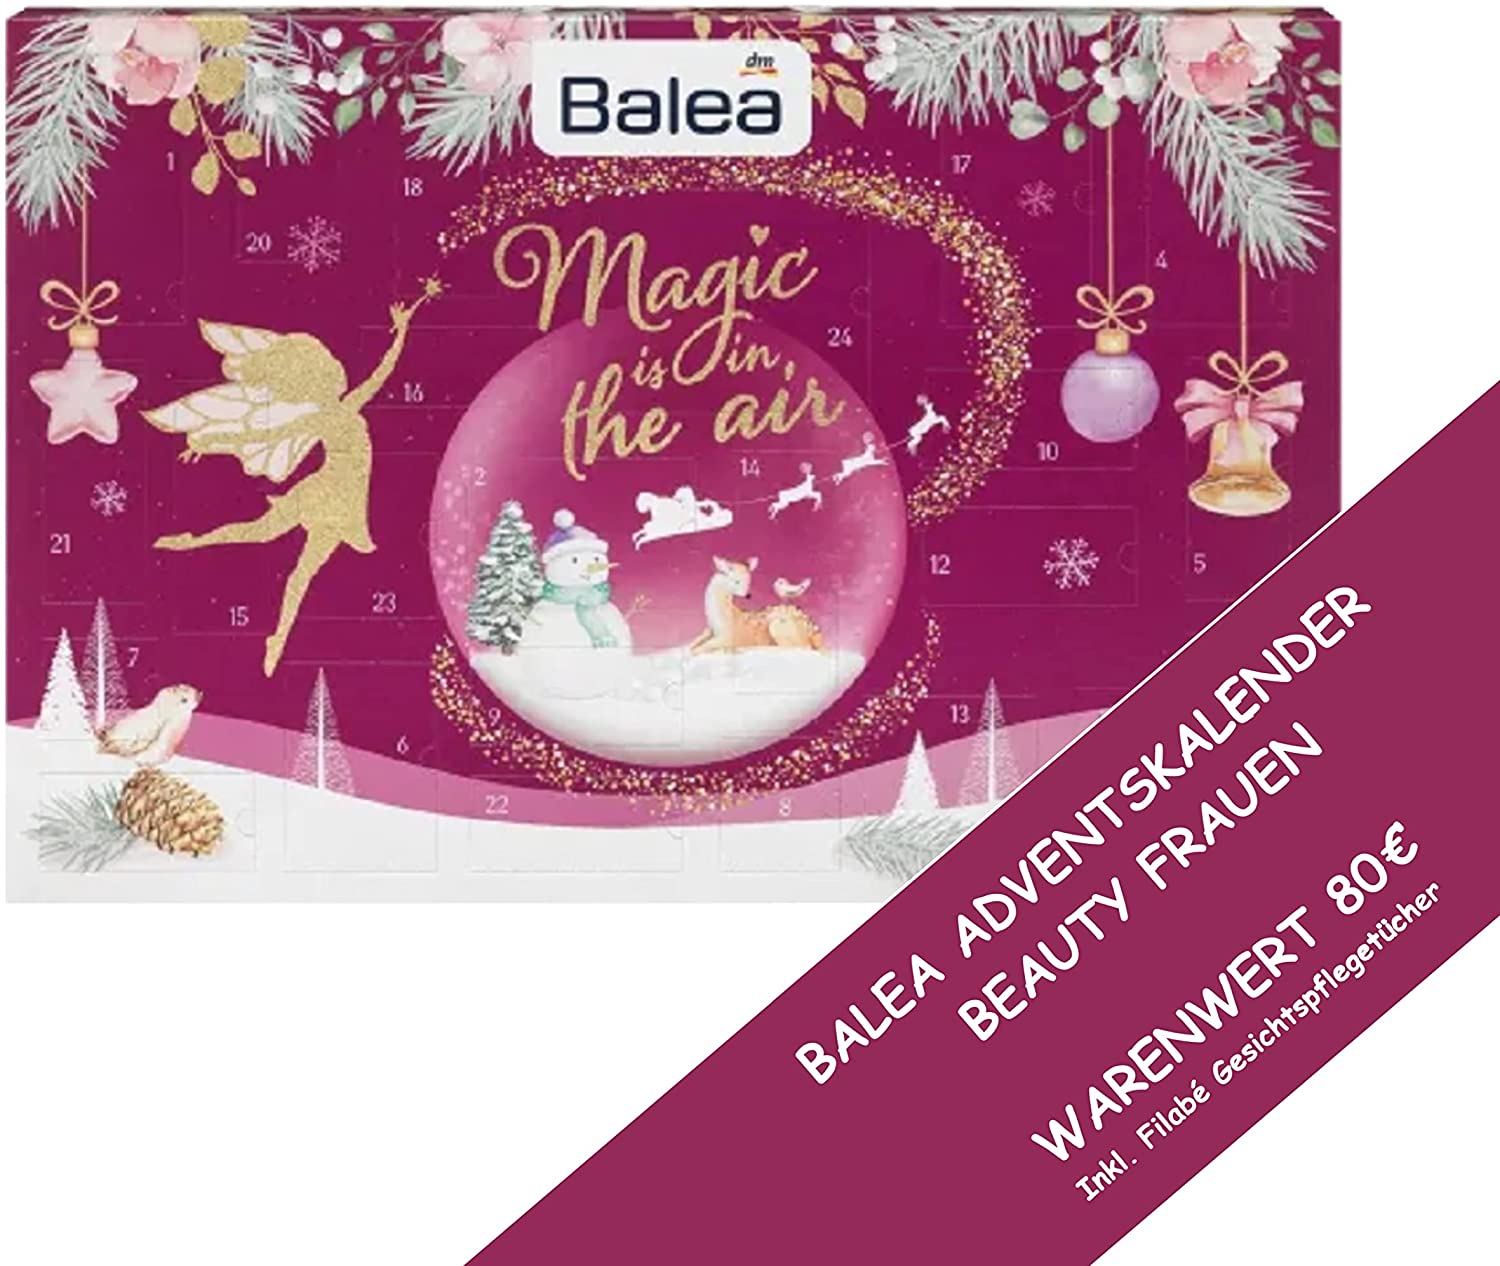 Balea Adventskalender 2021 Frauen Beauty - Kosmetik Advent Kalender für Frau & Mädchen, 24 Geschenke Wert 80€, Weihnachtskalender, Adventkalender